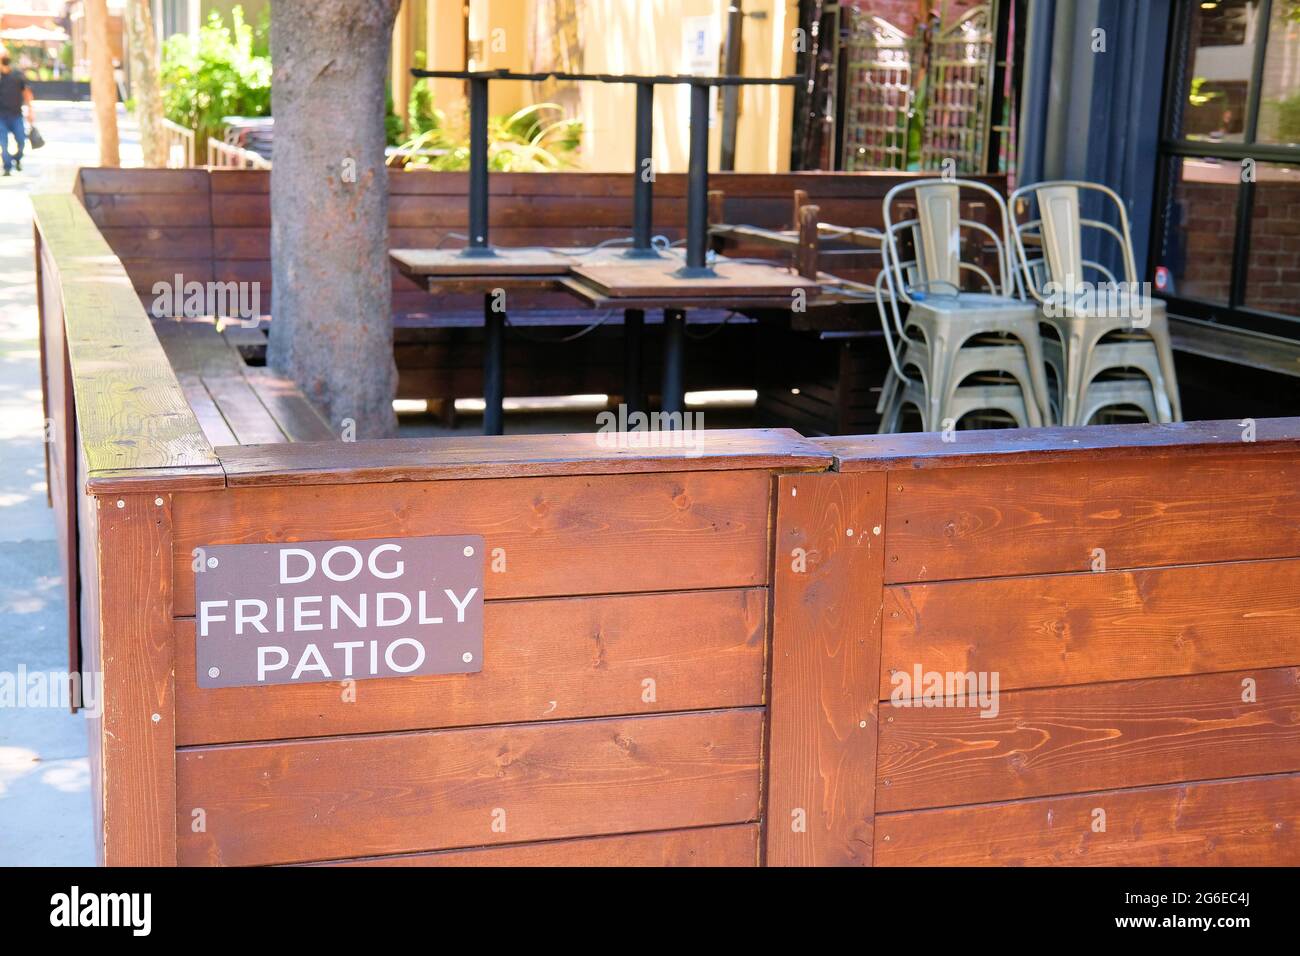 Schilder, die Restaurantgäste der hundefreundlichen Terrasse informieren, die für Gäste verfügbar ist, die mit einem Hund reisen oder sie besuchen; San Jose, Kalifornien, USA. Stockfoto